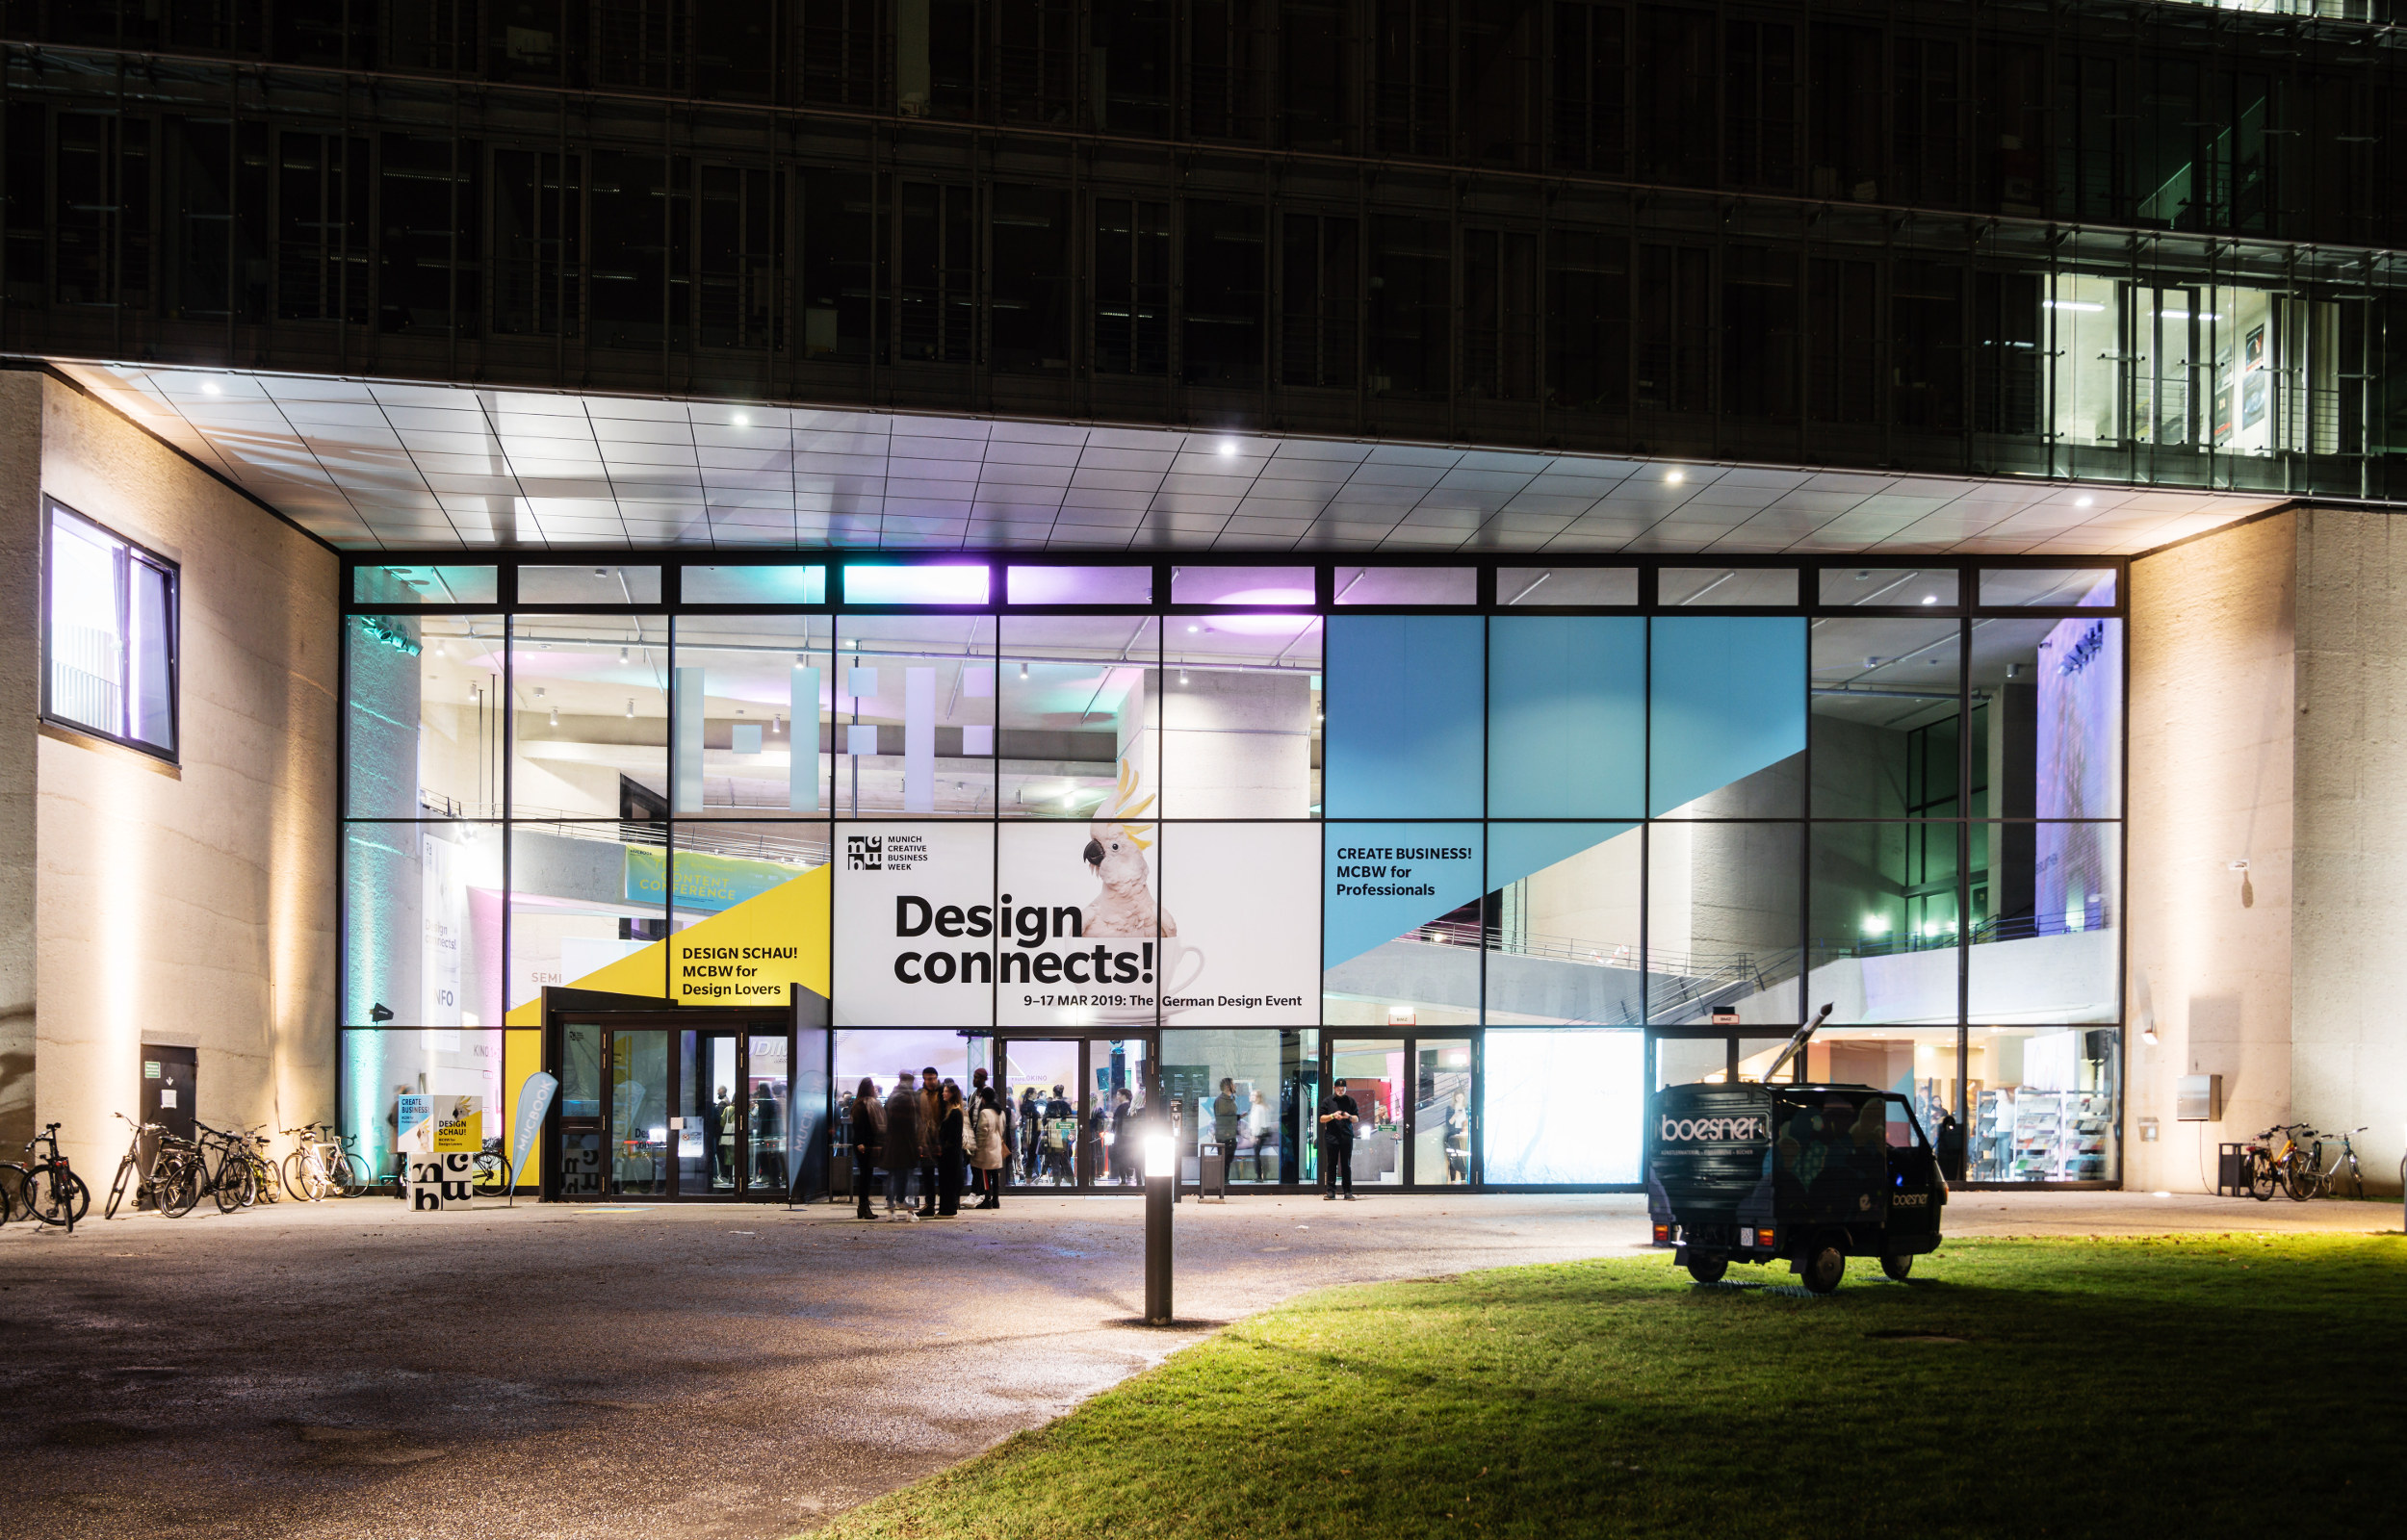 nächtliche Fassade der Hochschule für Fernsehen und Film während der Munich Creative Business Week MCBW 2019